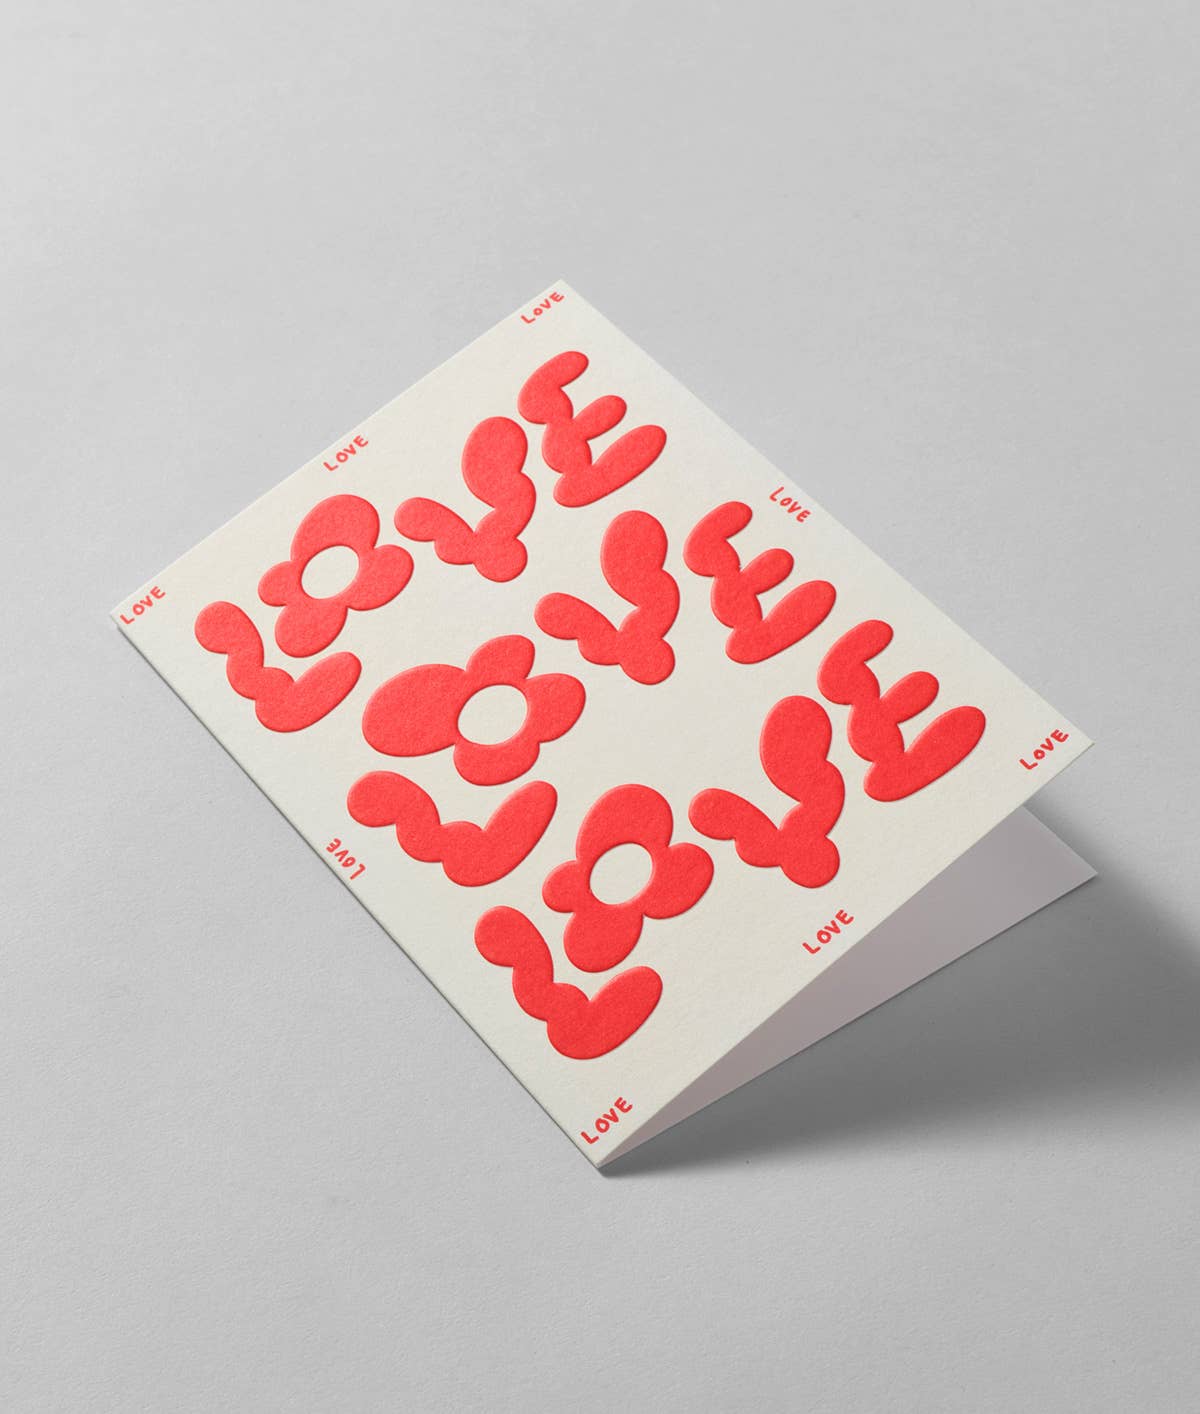 Love Love Love Card